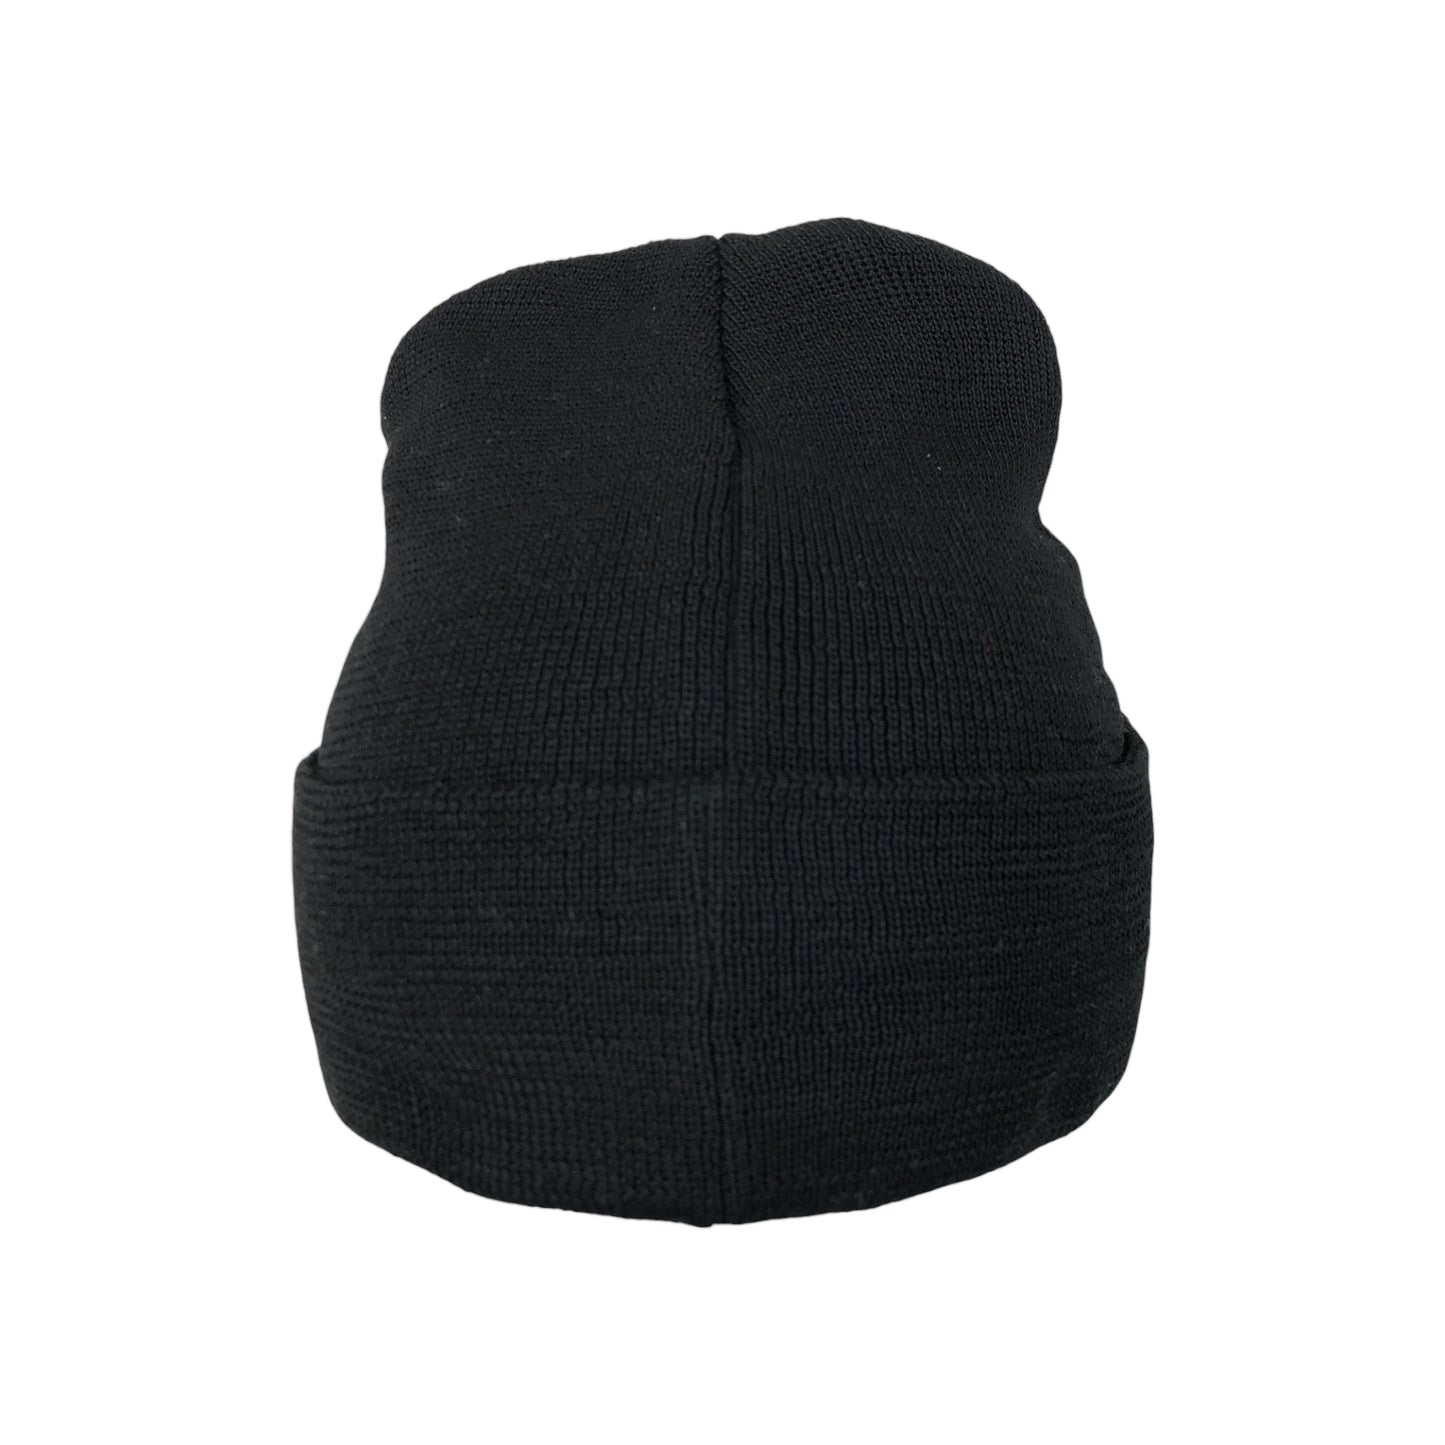 New Era Fish Sticks Black Cuff Beanie Hat